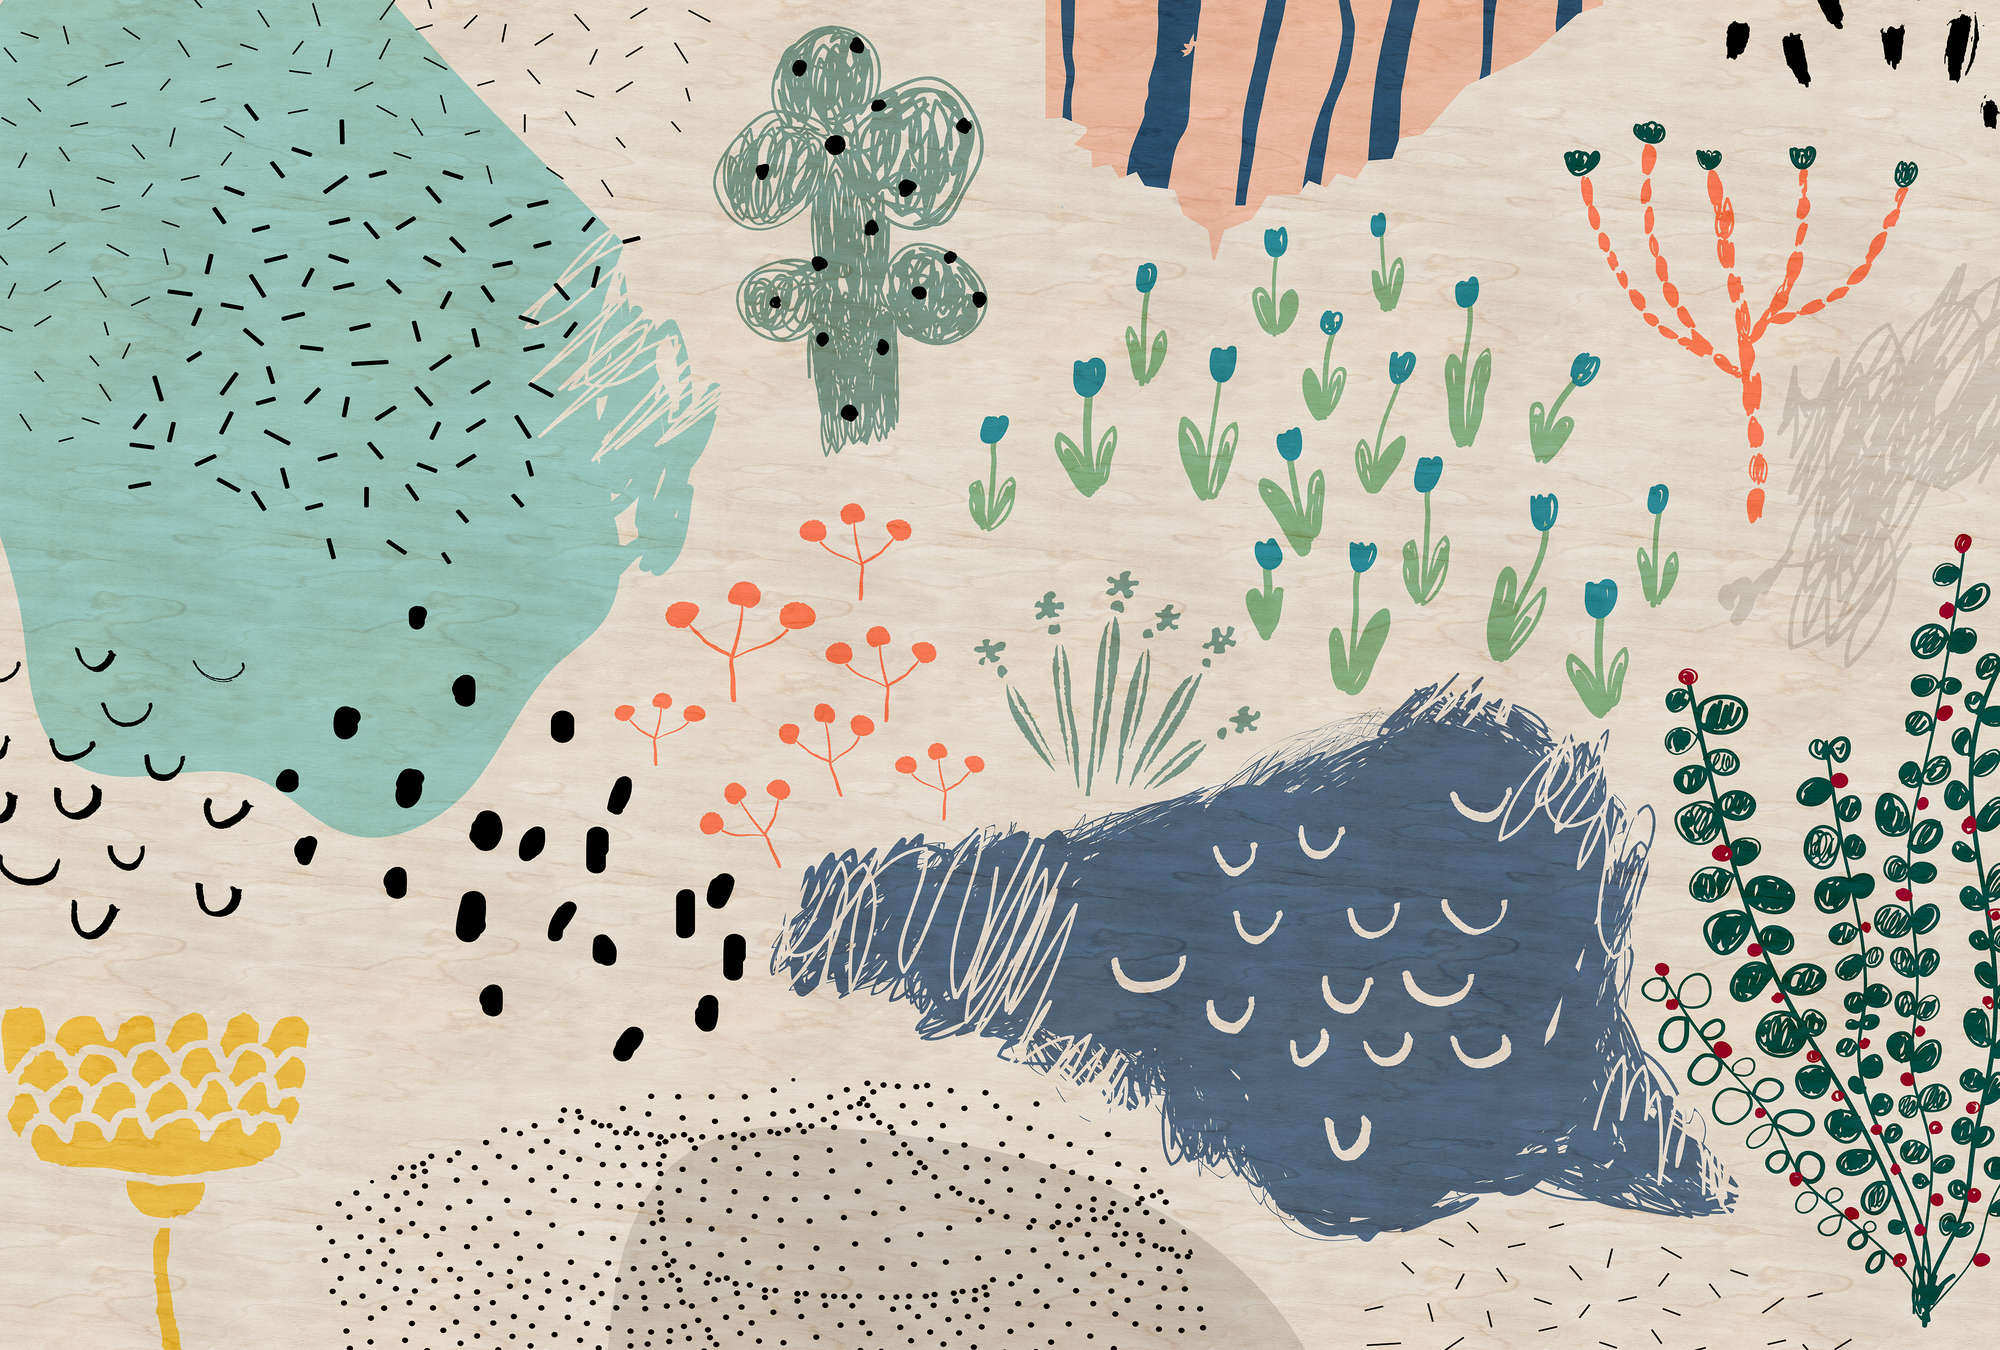             Crayon garden1 - Nursery wallpaper, Doodle motif in plywood structure - Beige, Blue | Matt smooth fleece
        